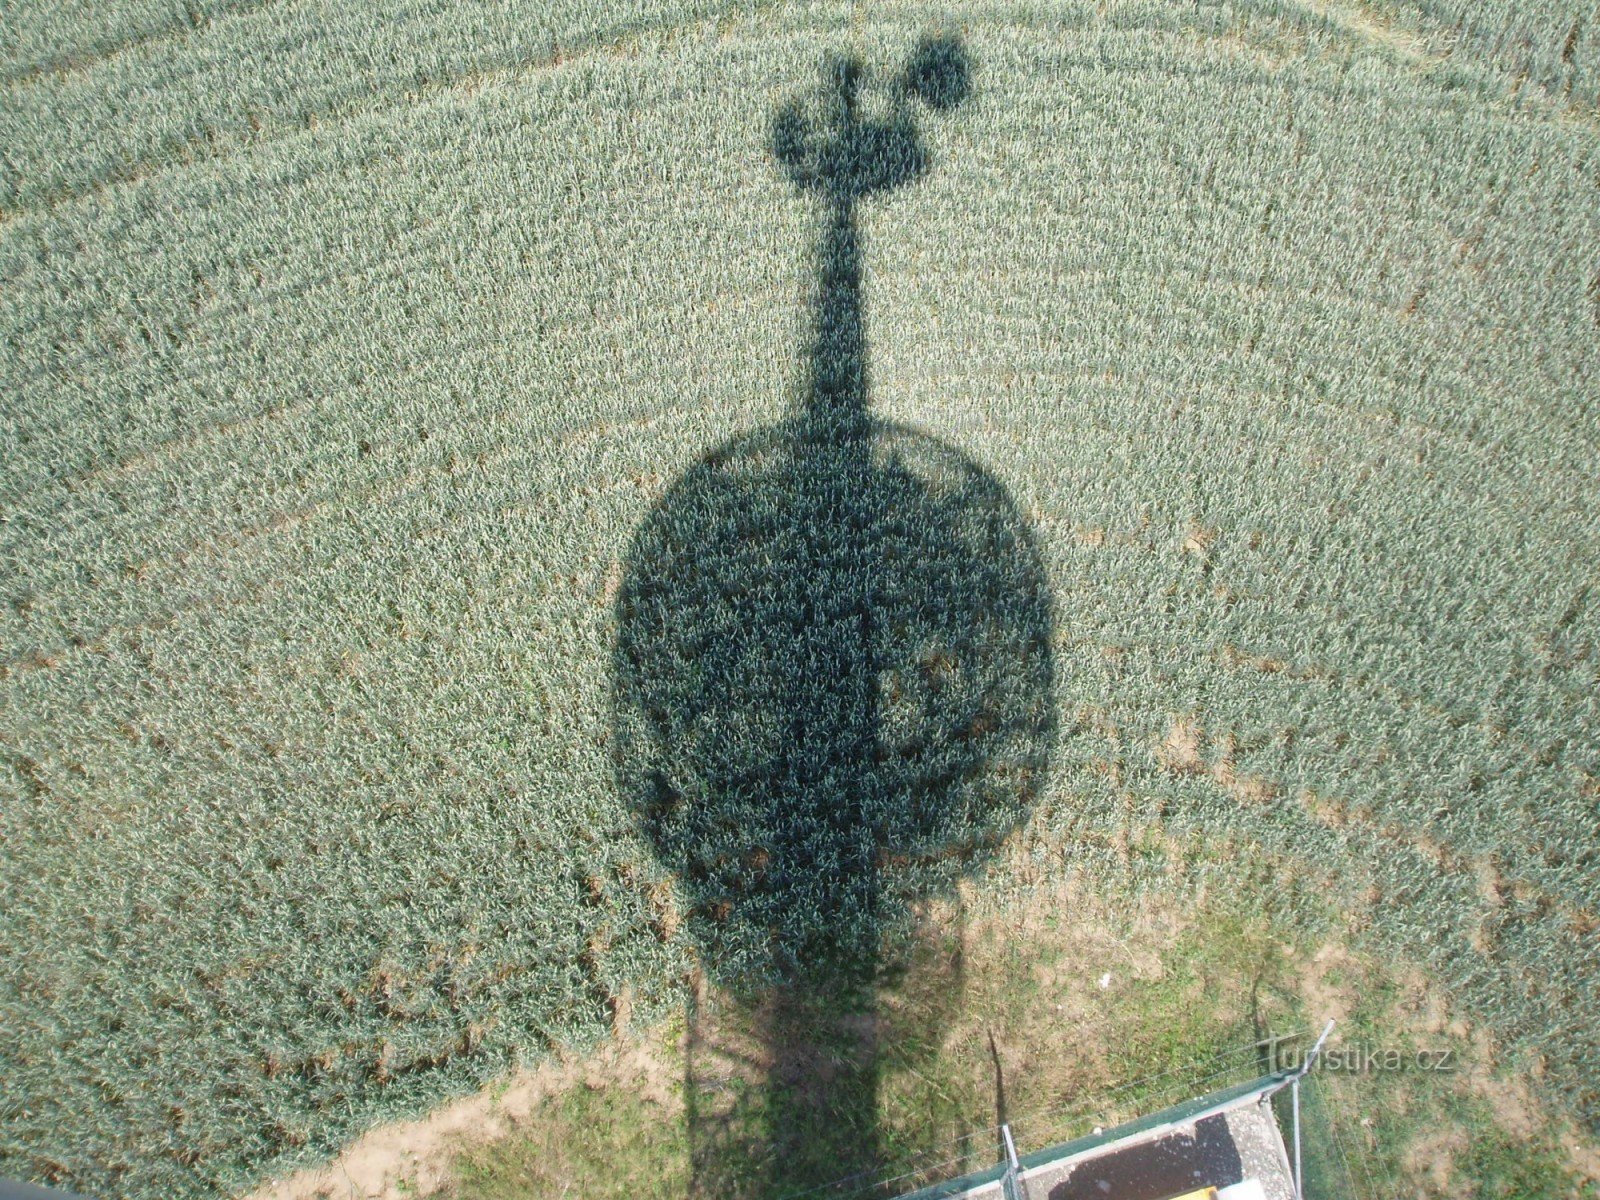 Από τον πύργο παρατήρησης μπορείτε να δείτε τον ίδιο πύργο παρατήρησης, που προβάλλεται στο πεδίο